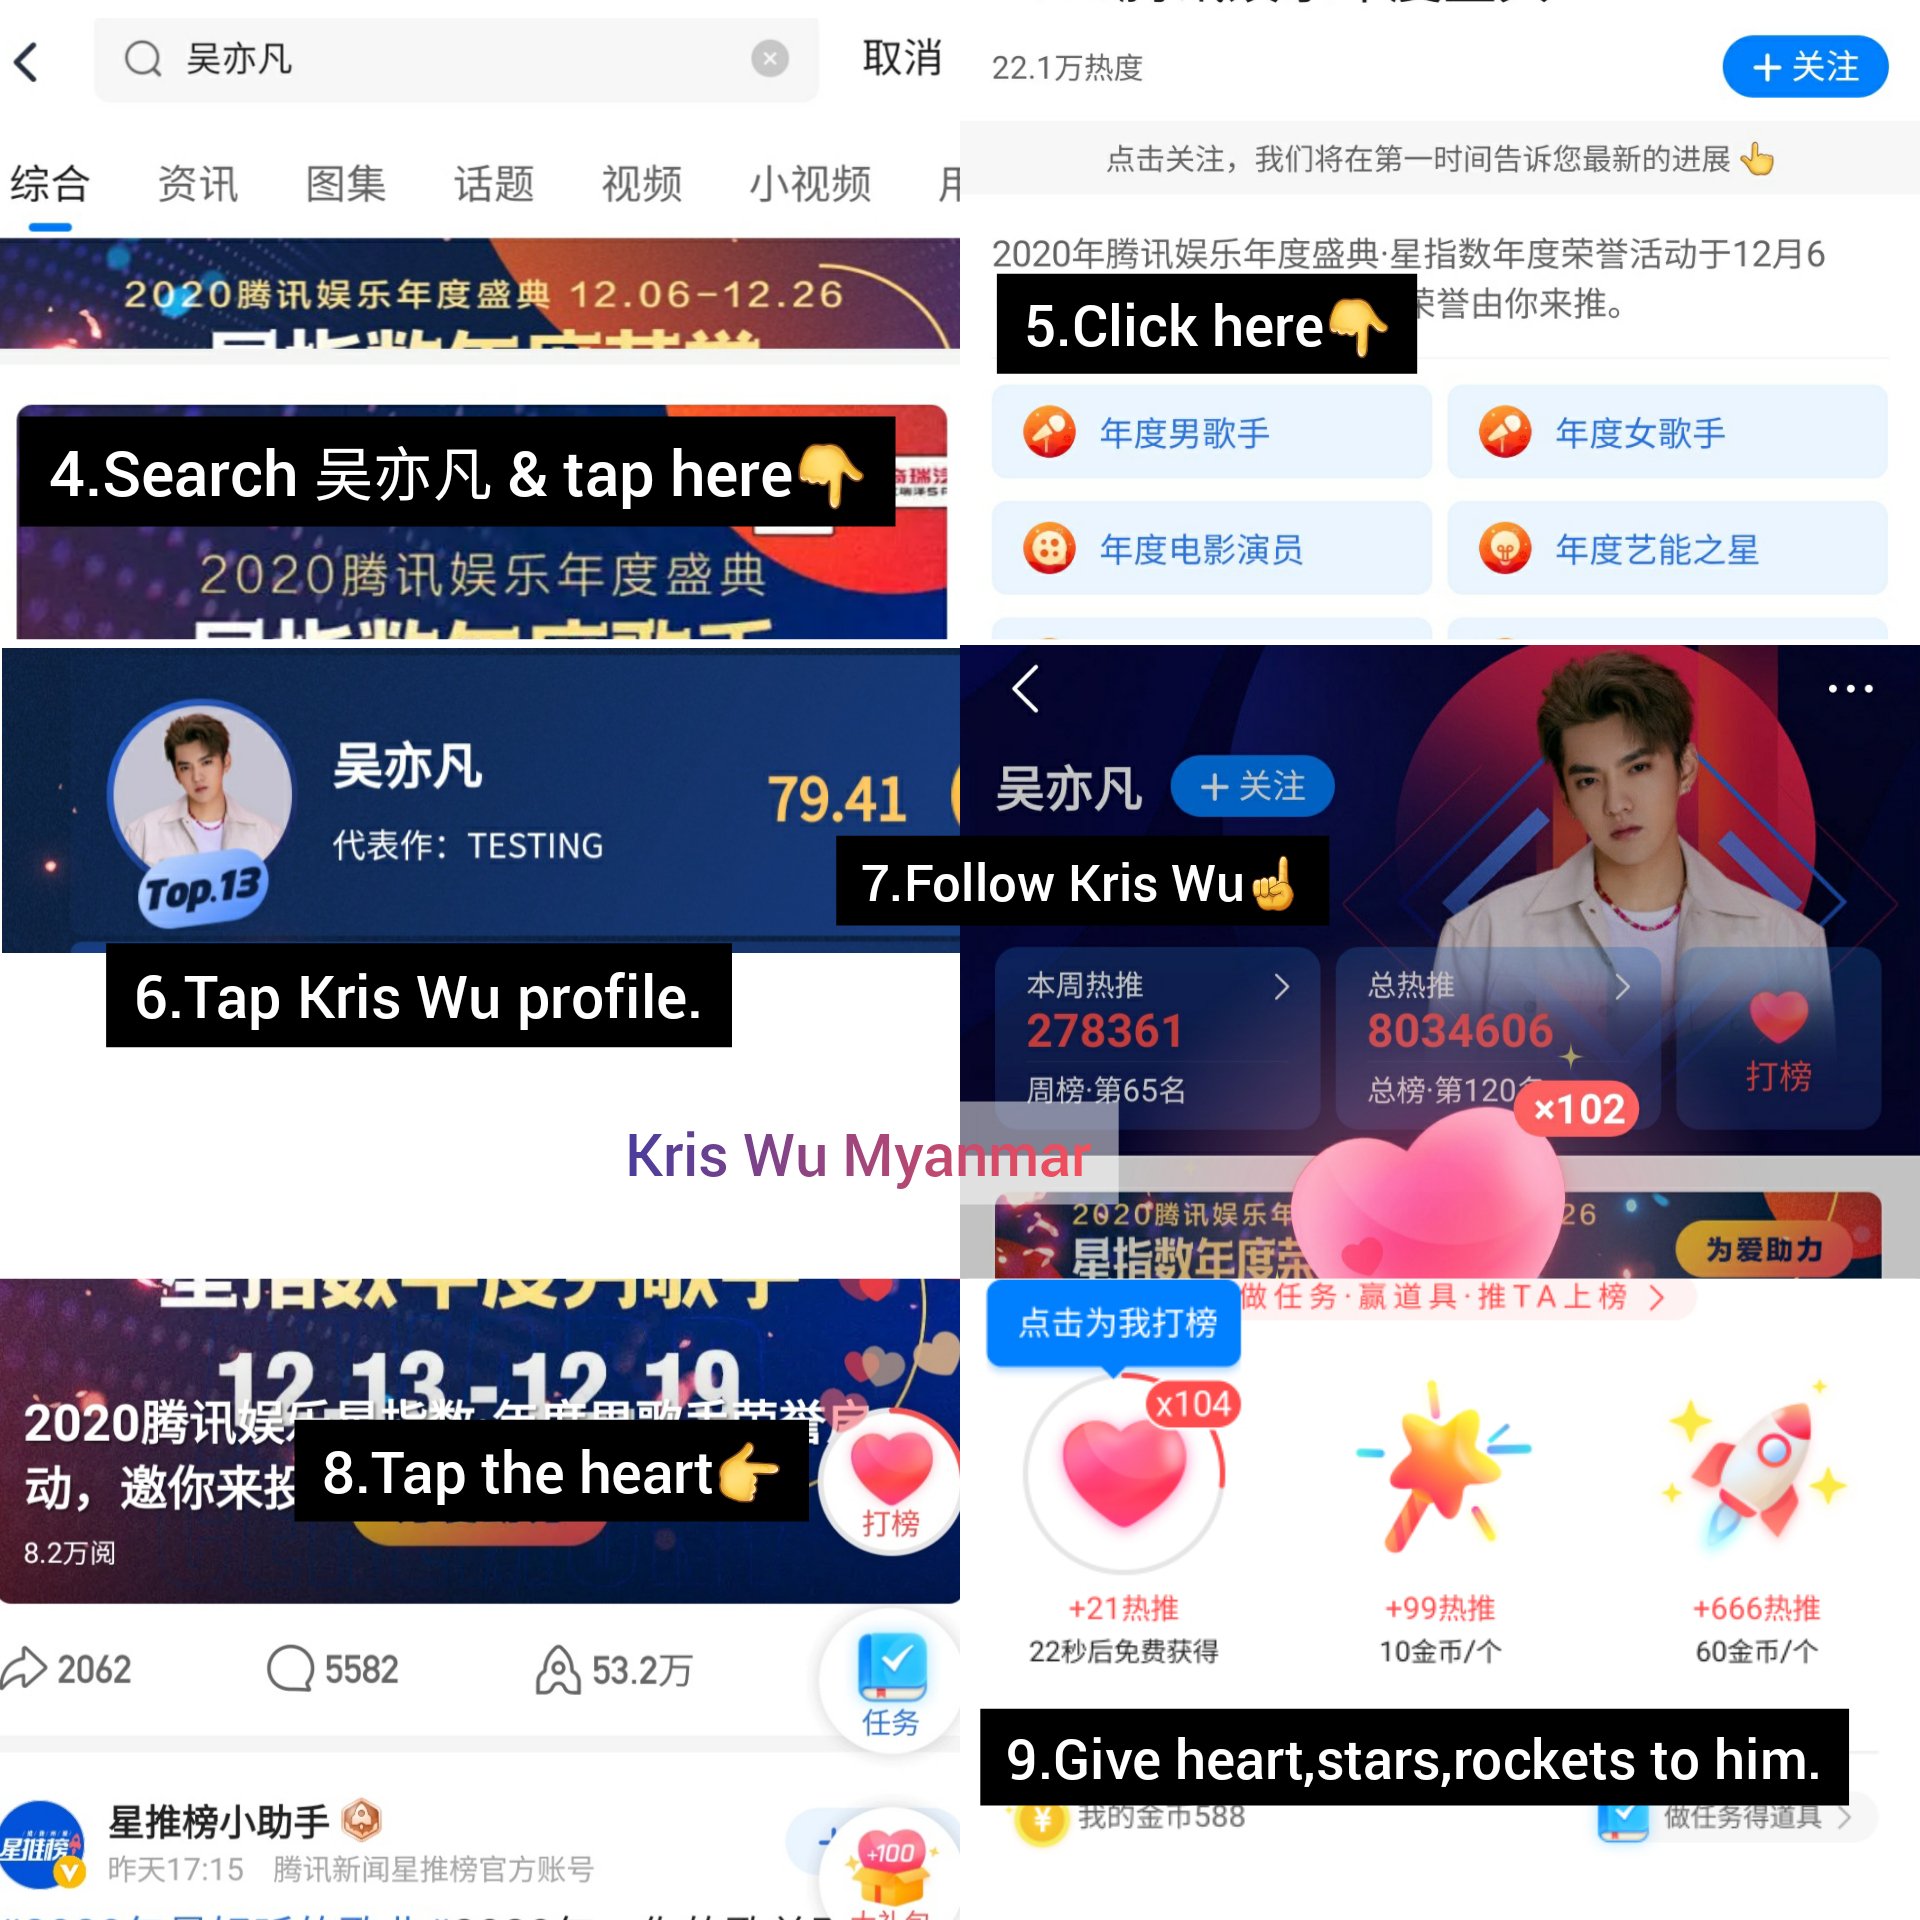 Kris Wu weibo update 2020 Tencent - Kris galaxy_fanfan